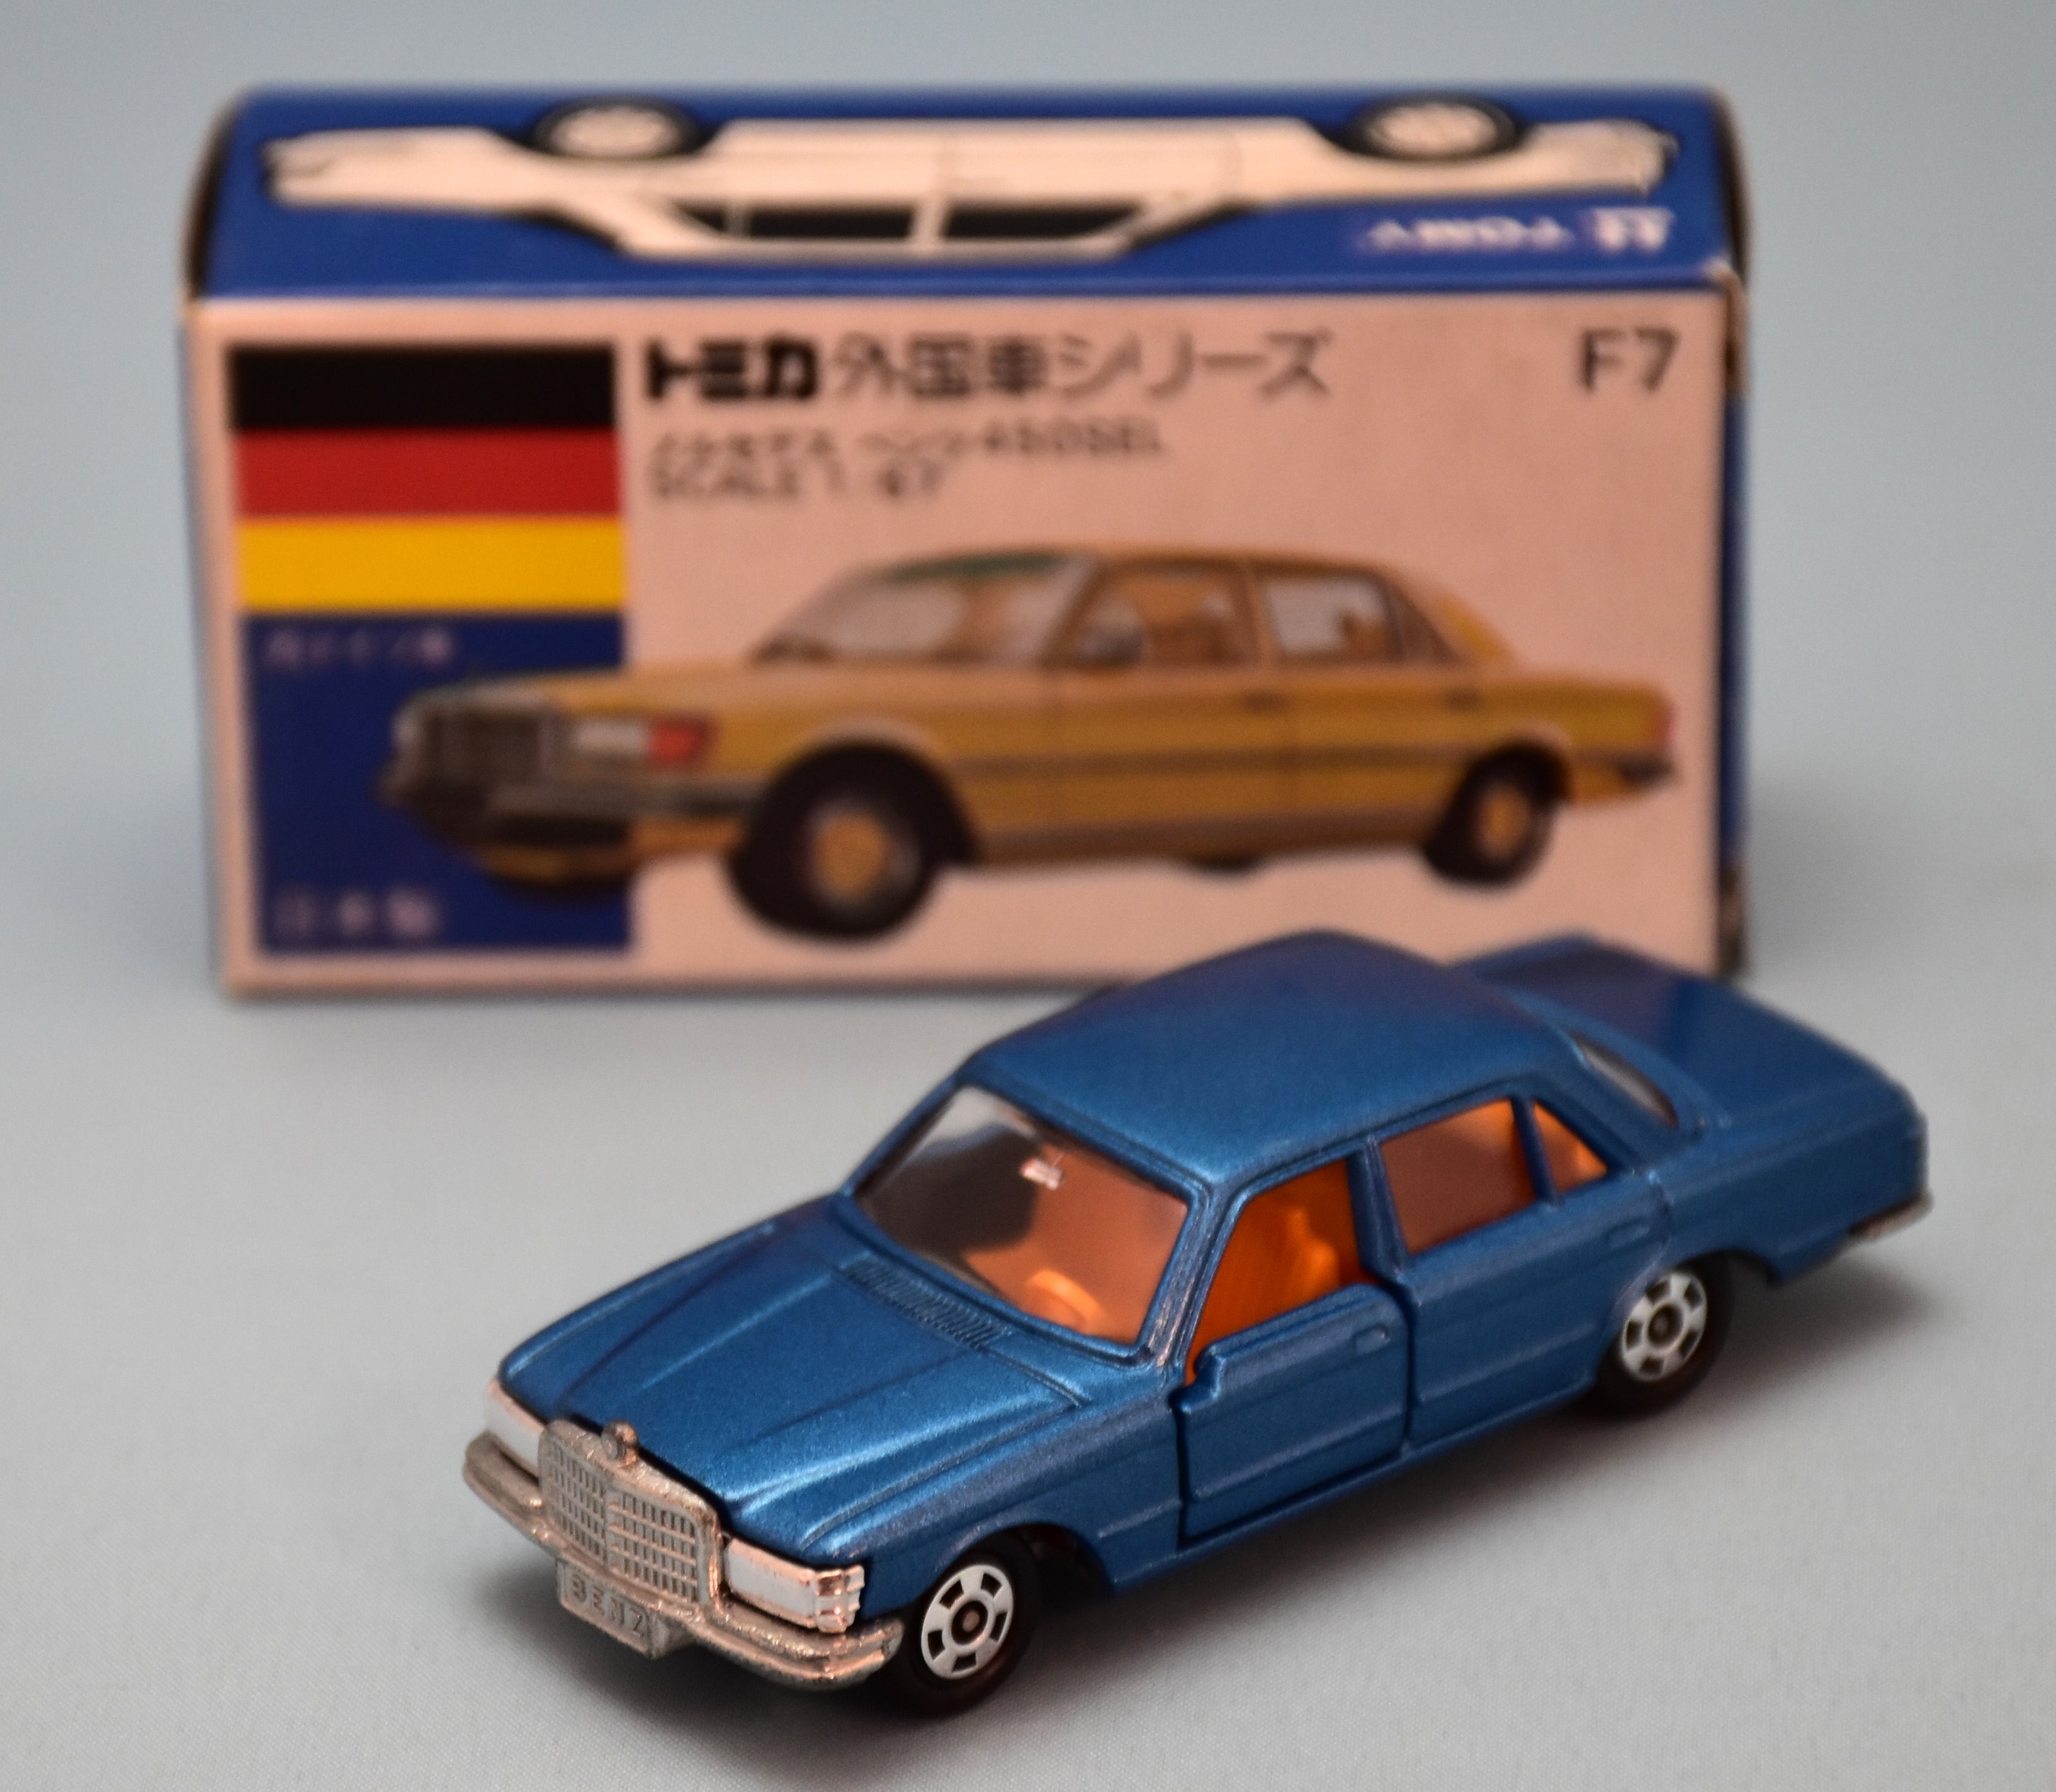 品質満点 トミカ 青箱 日本製 F7-1-13 メルセデス ベンツ 450SEL 1/67